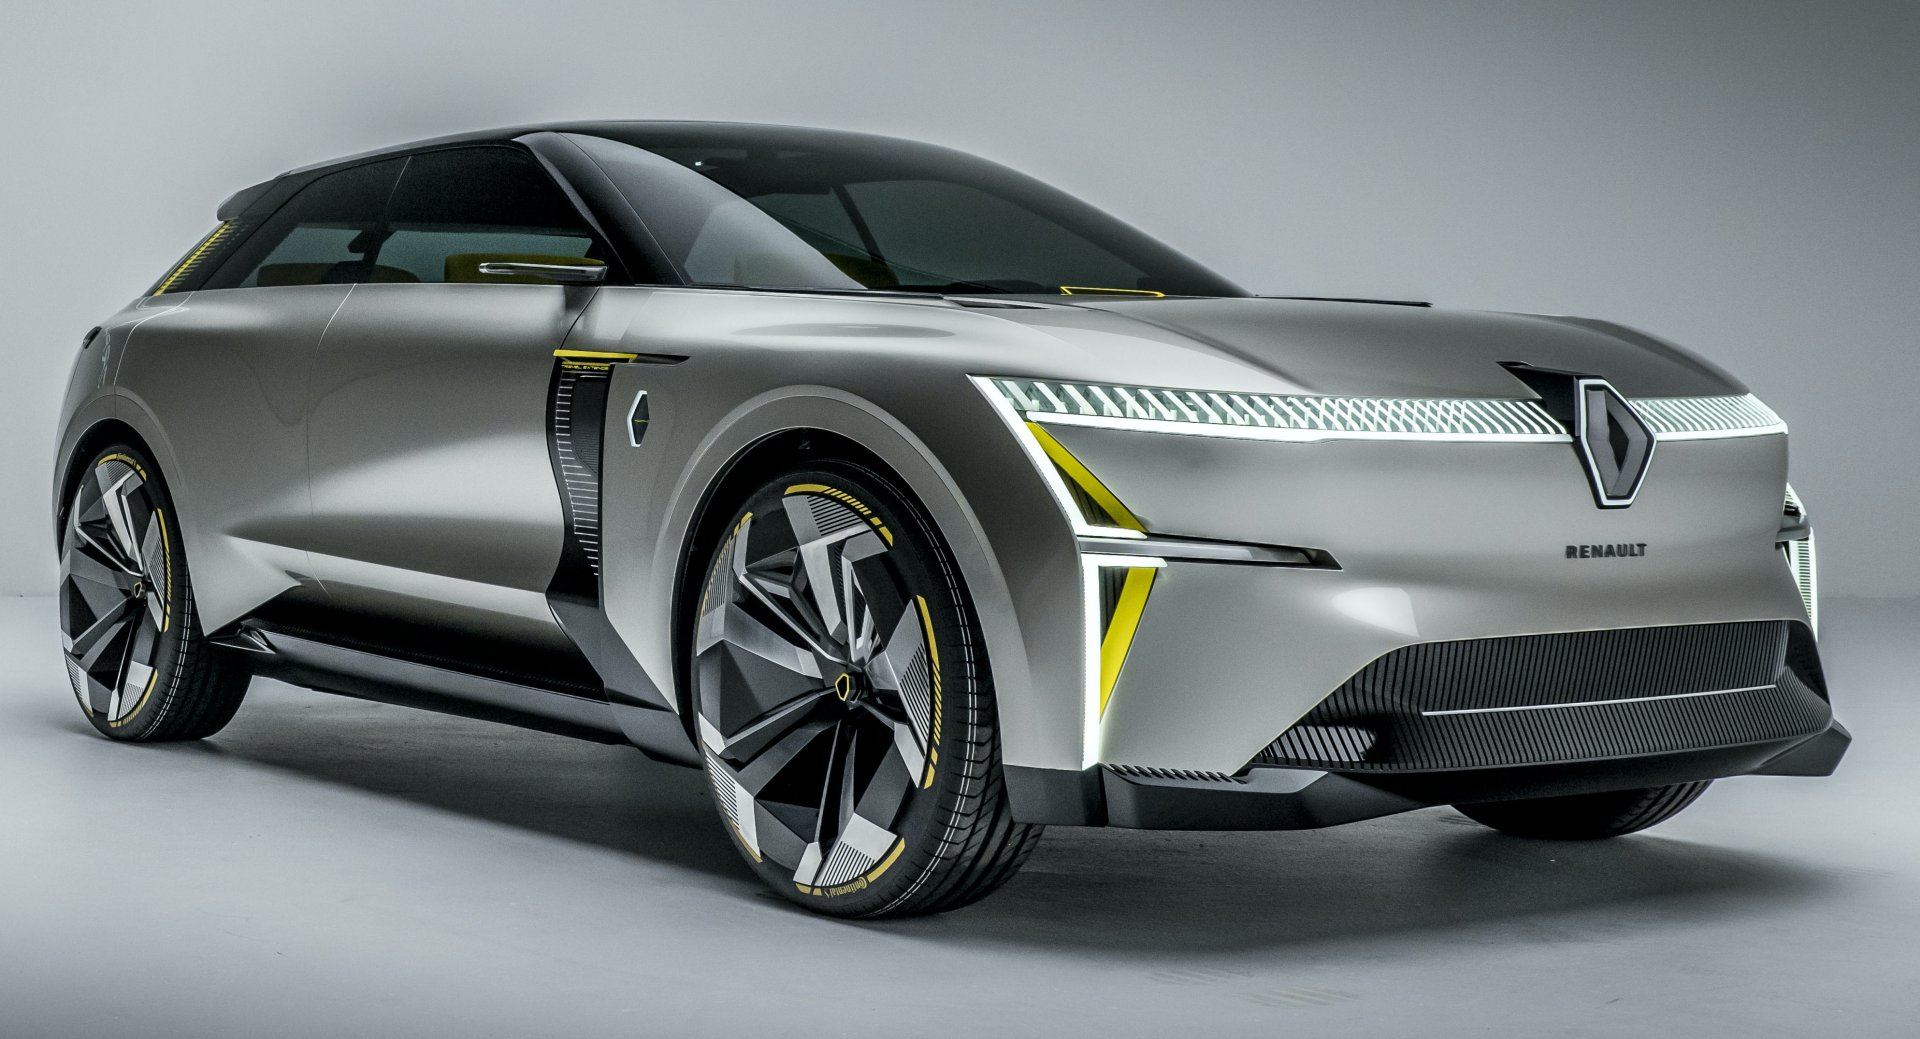 Audi unveils a shape-shifting concept car